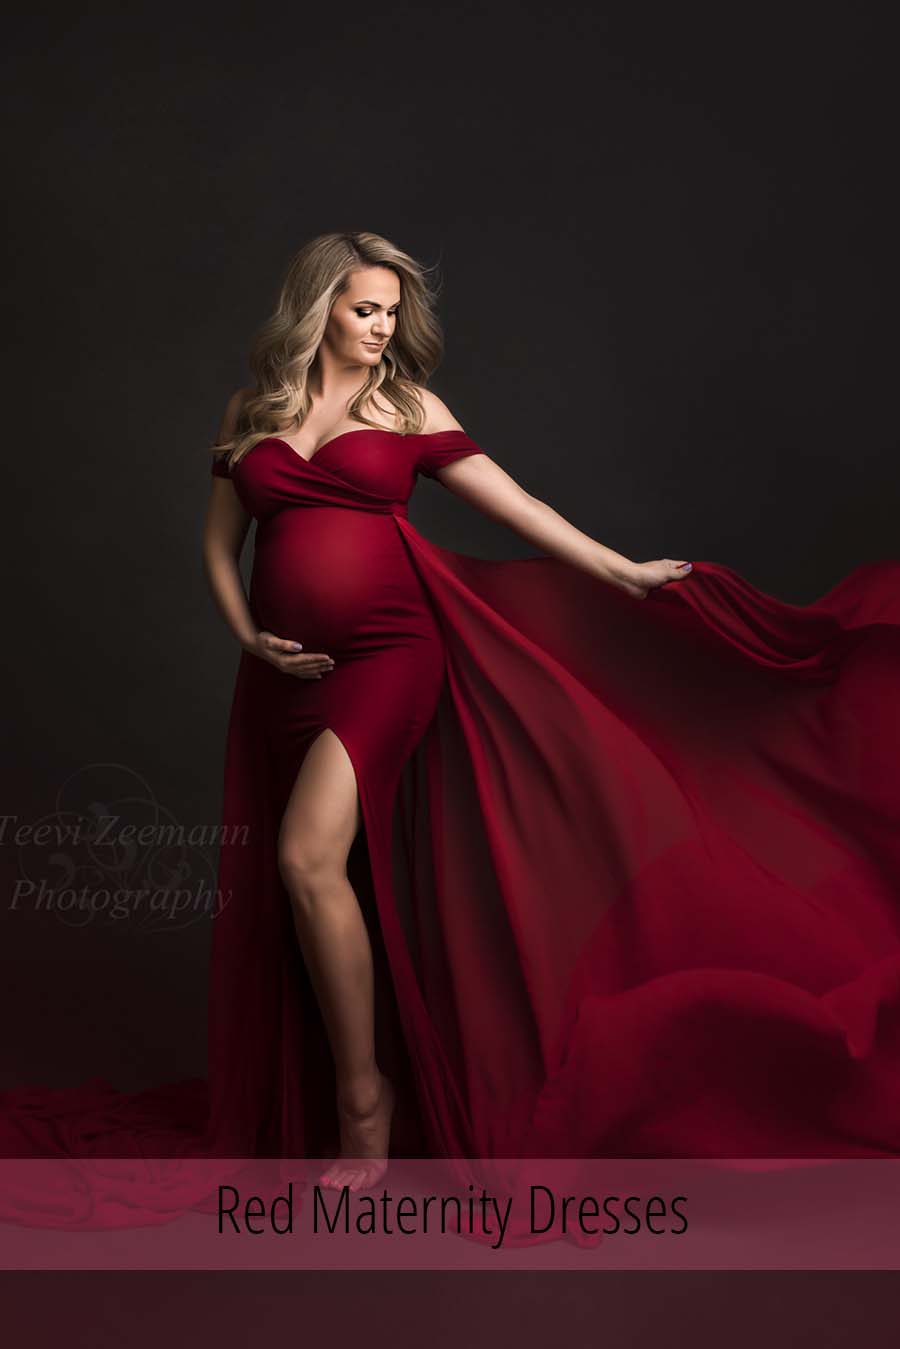 Red Maternity Dresses | Mii-Estilo.com